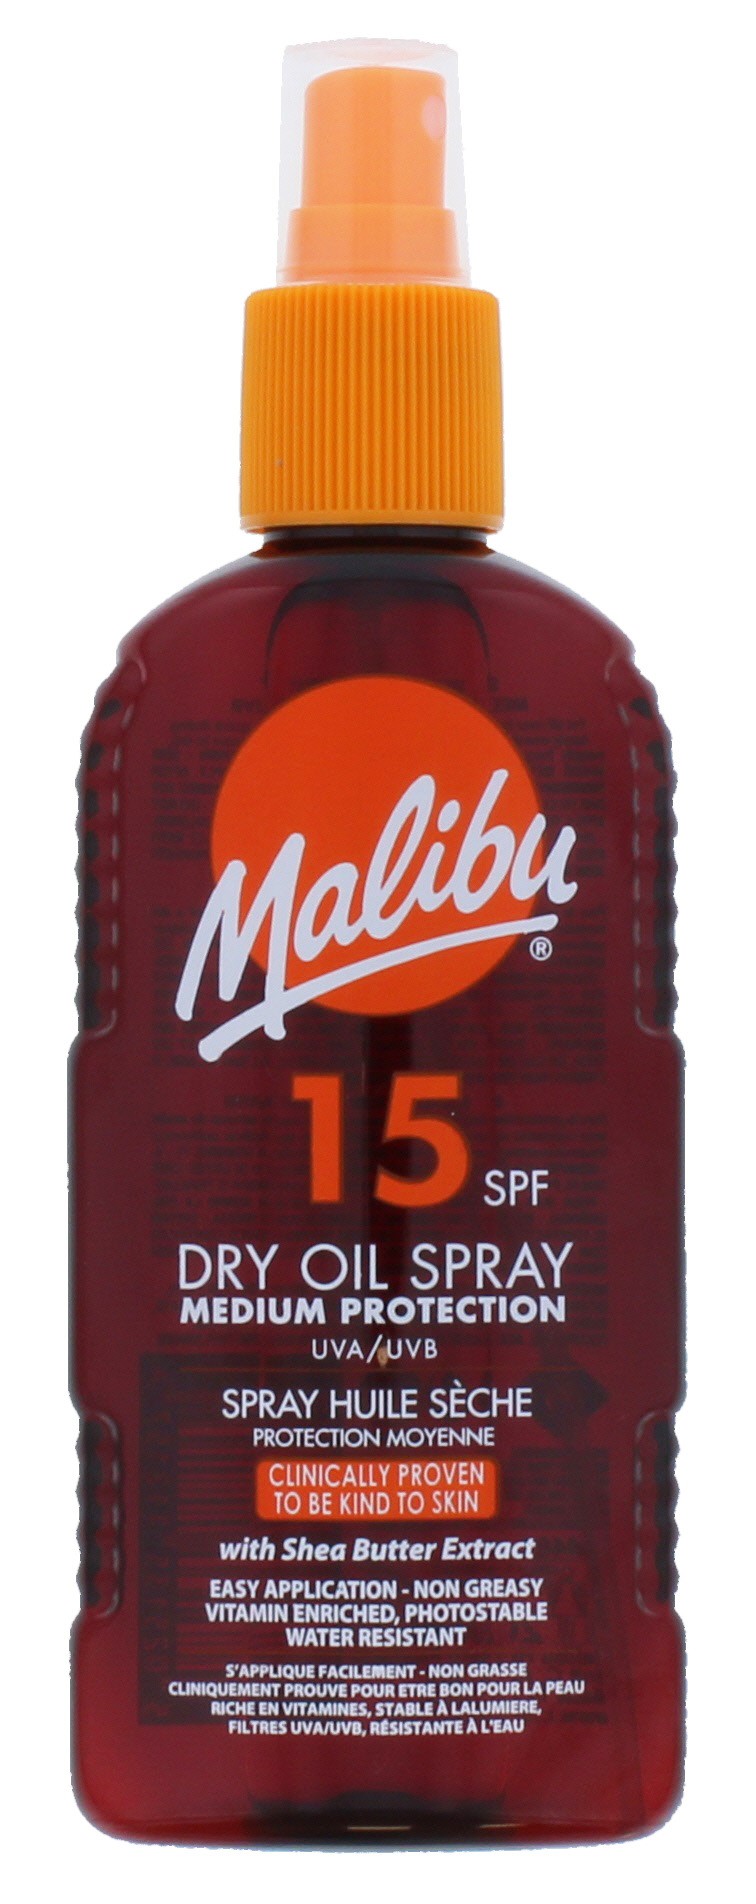 Malibu Spf 15 Dry Oil Spray